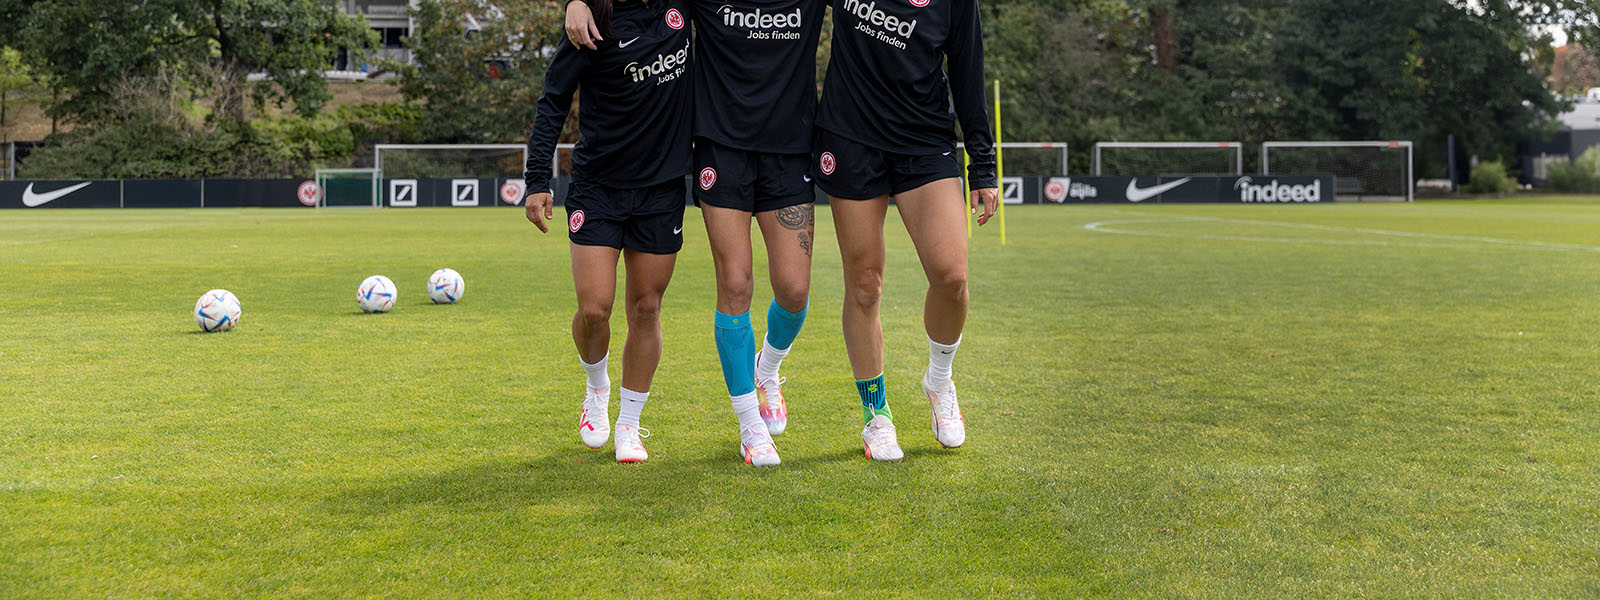 Drei Fußballspielerinnen mit verschiedenen Bandagen umarmen sich auf einen Rasenplatz